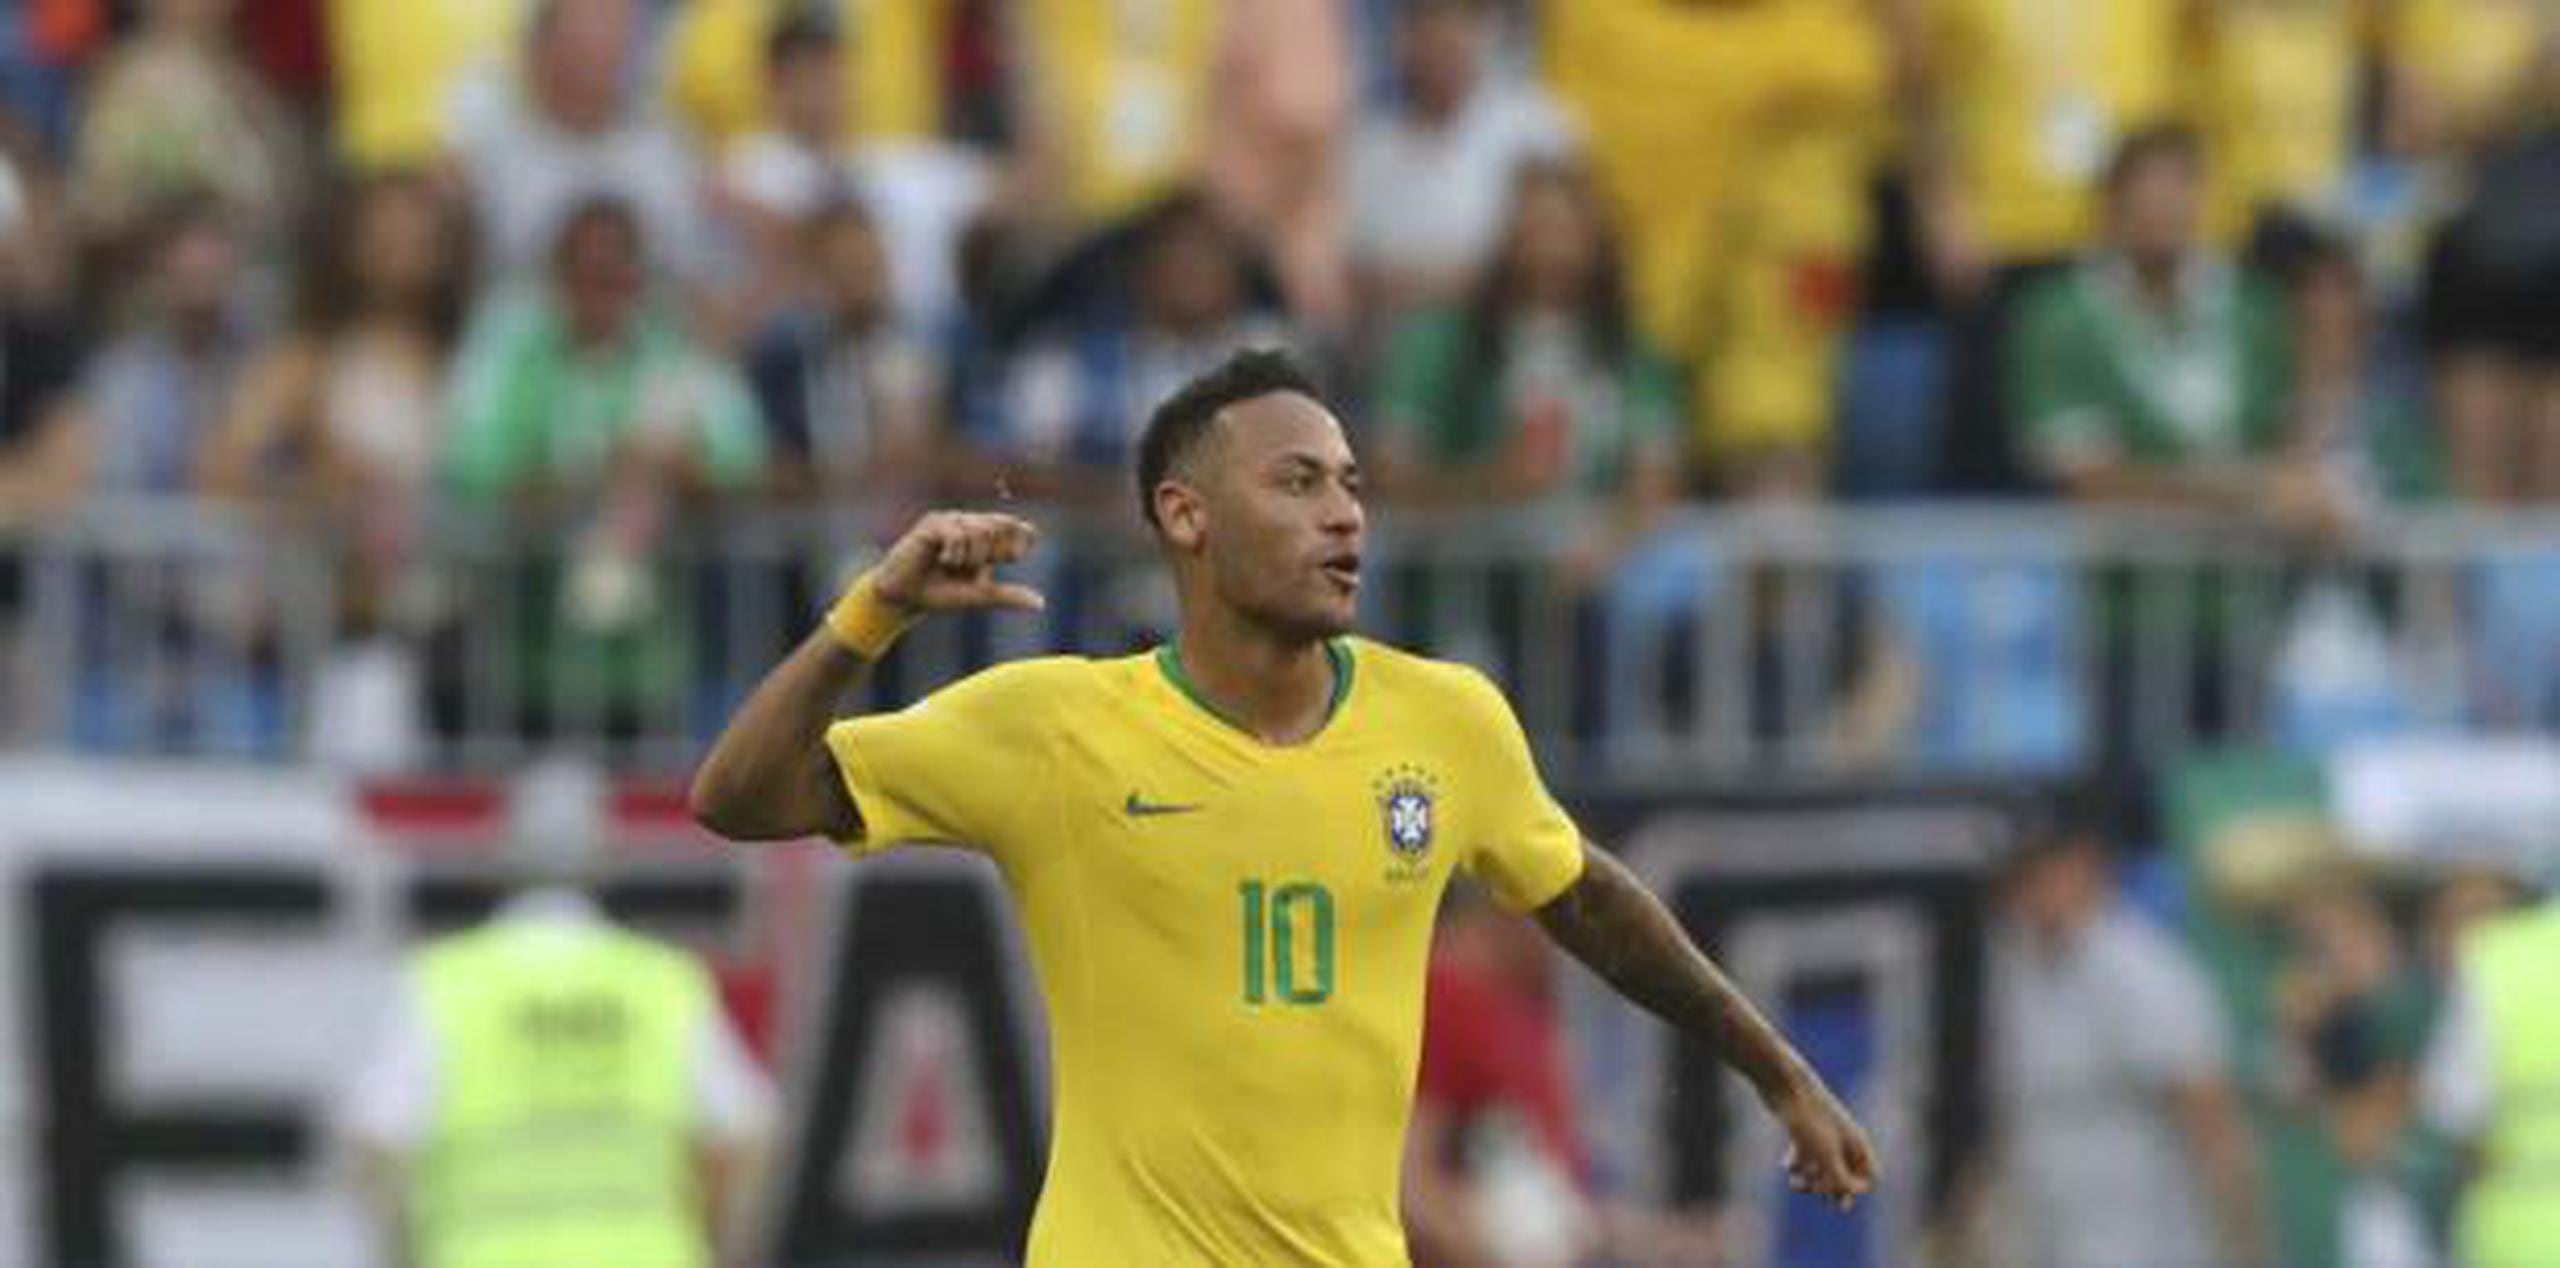 El equilibrio y la firmeza defensiva son dos rasgos centrales del pentacampeón mundial  que no por ello traiciona su genética creativa, encarnada por figuras como Neymar. (AP)